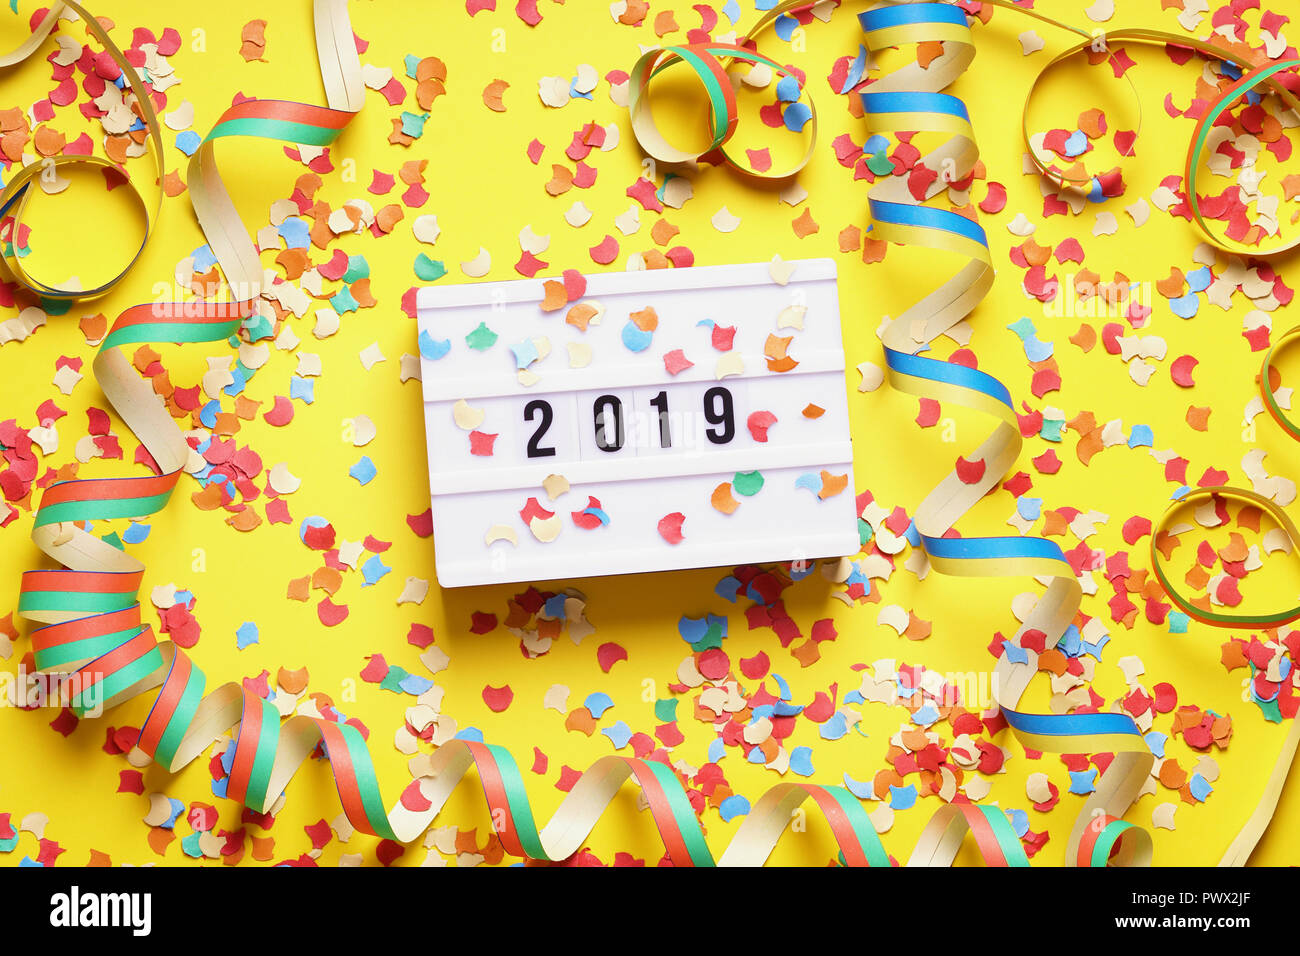 2019 Celebración del Año Nuevo concepto laicos plana con confeti y serpentinas Foto de stock